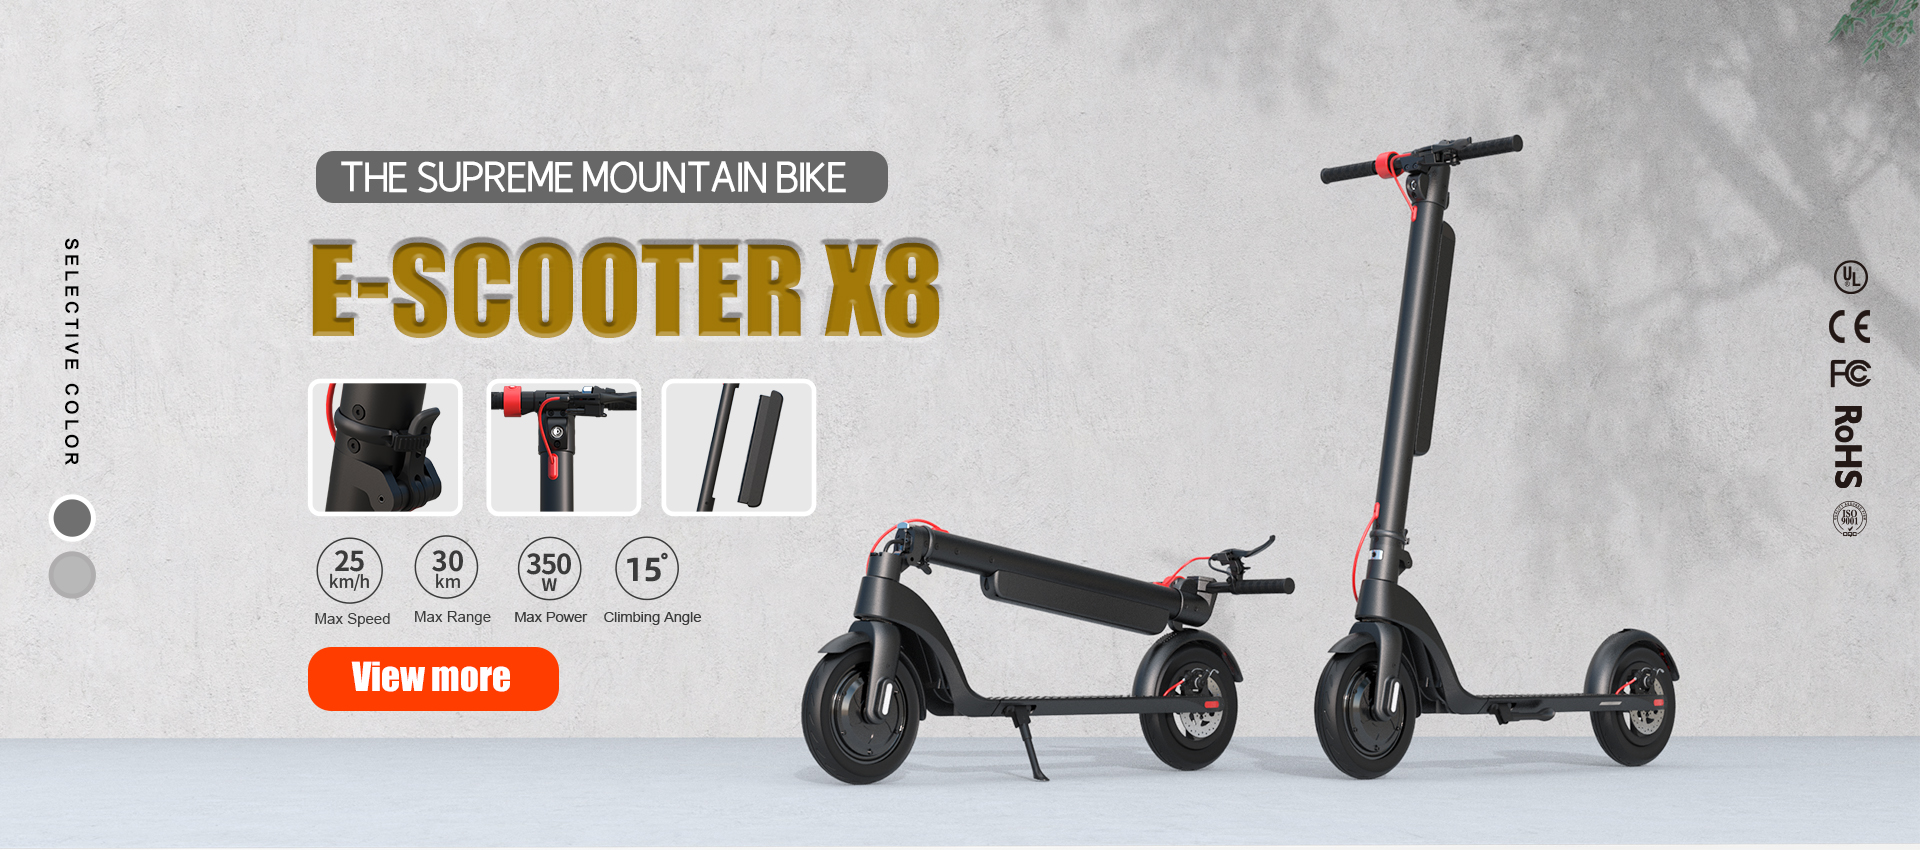 X8 E-Scooter